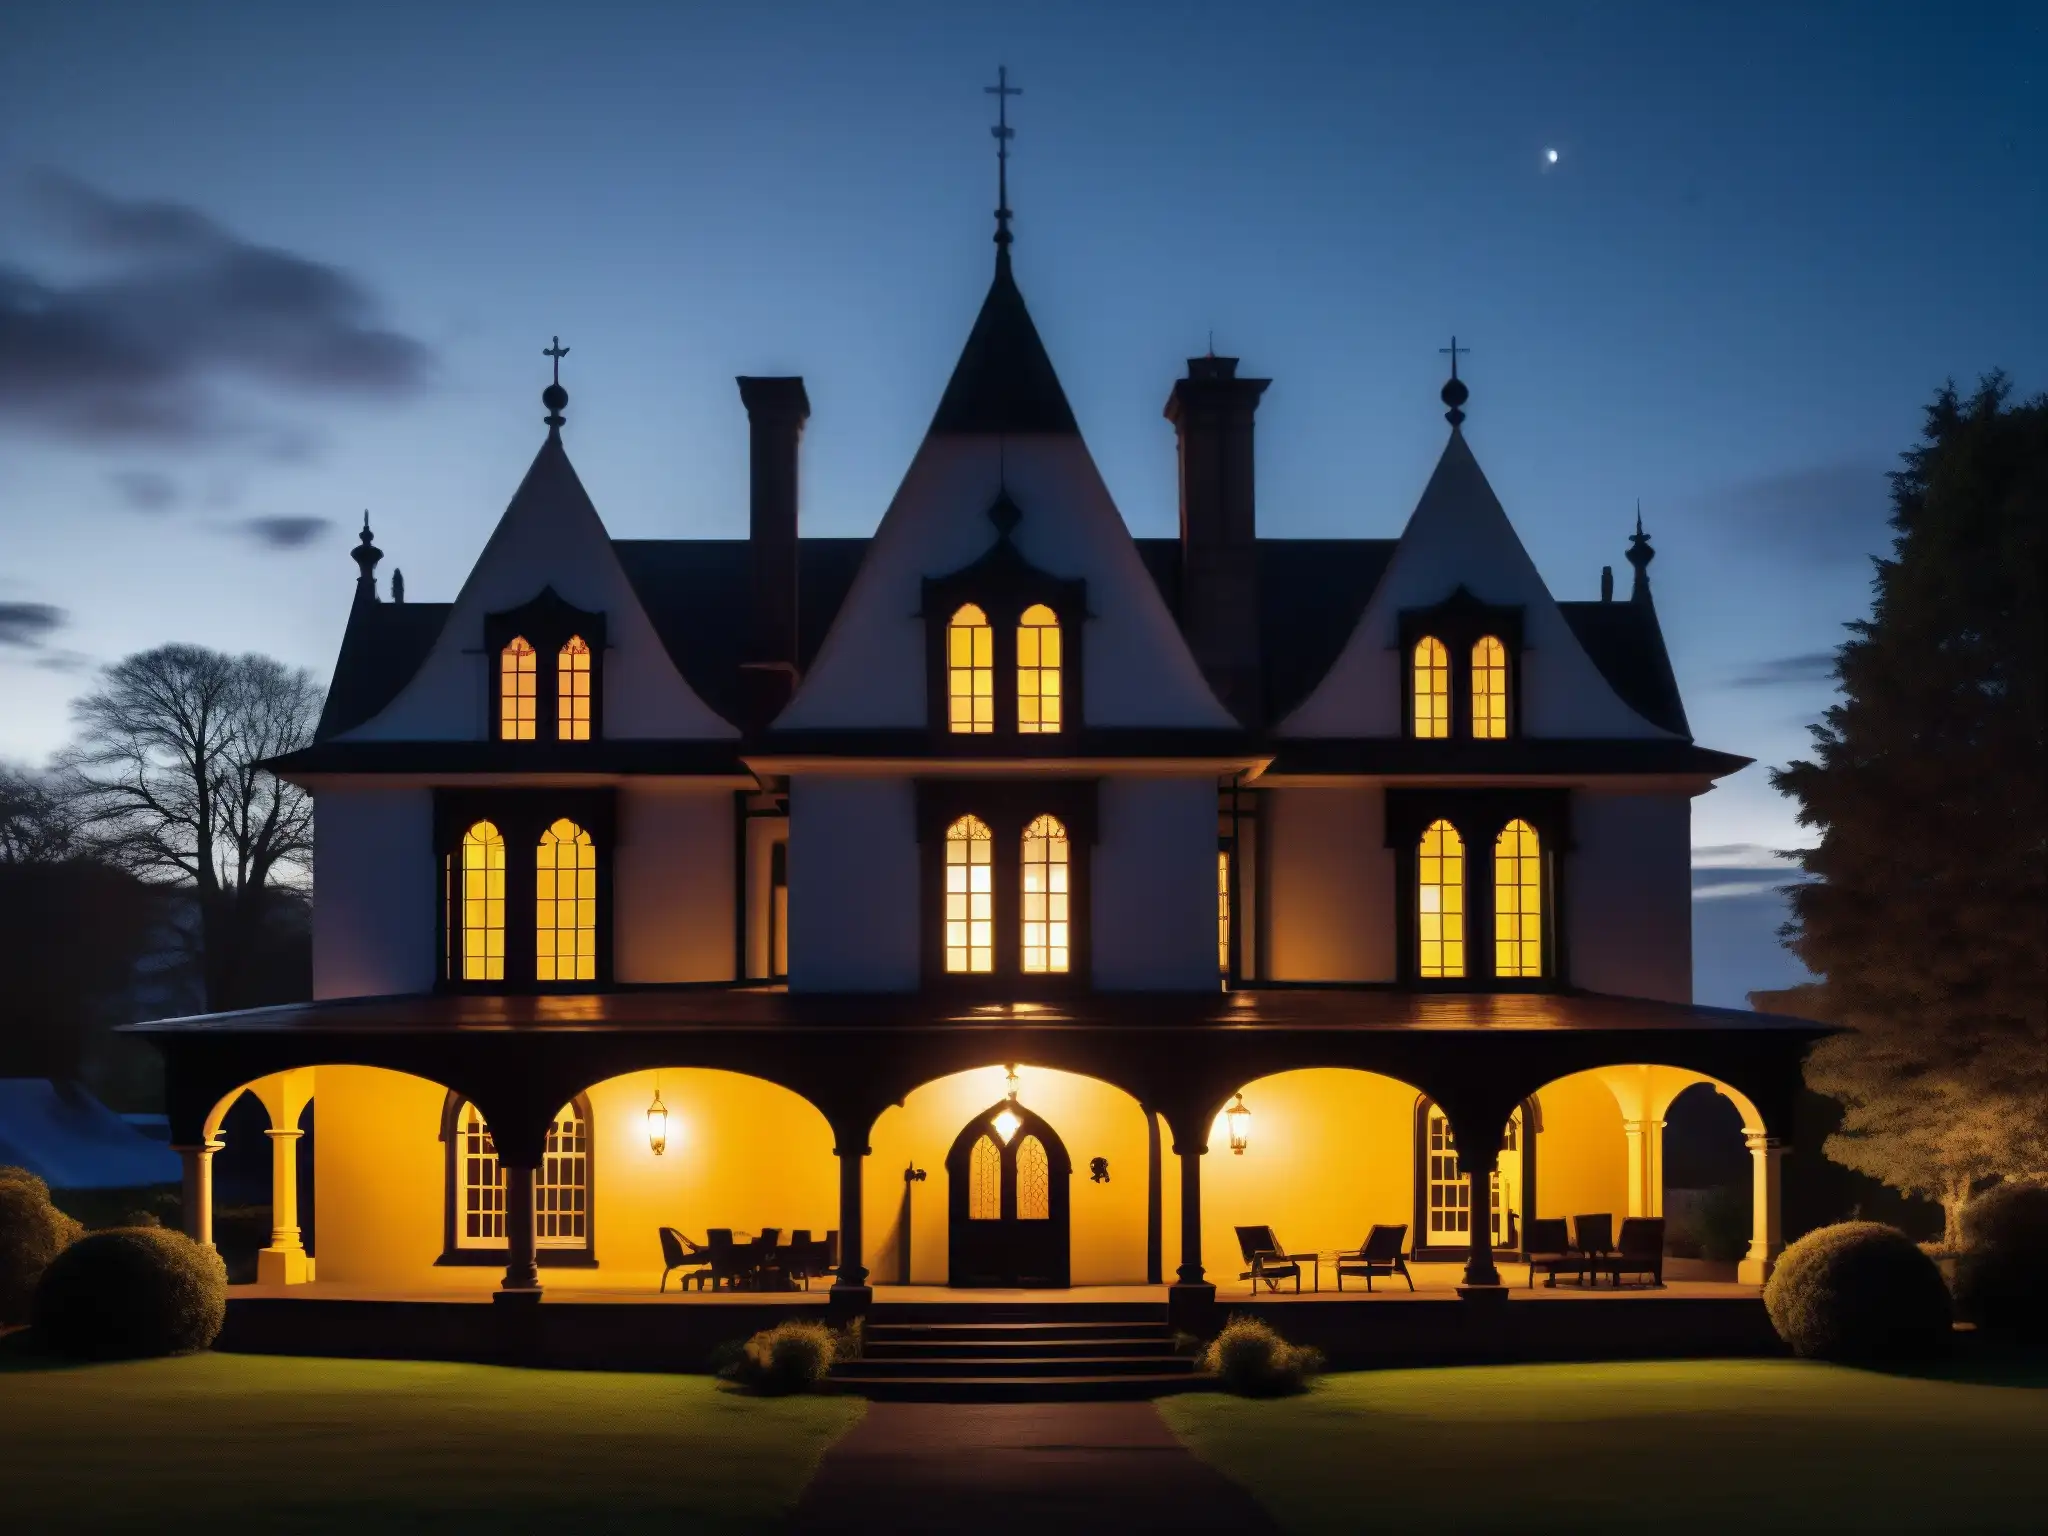 La leyenda figura negra de Victoria's Black Swan Inn se manifiesta en la oscuridad de la noche, con su arquitectura gótica iluminada por una solitaria luz en la ventana, mientras una misteriosa figura se vislumbra en primer plano